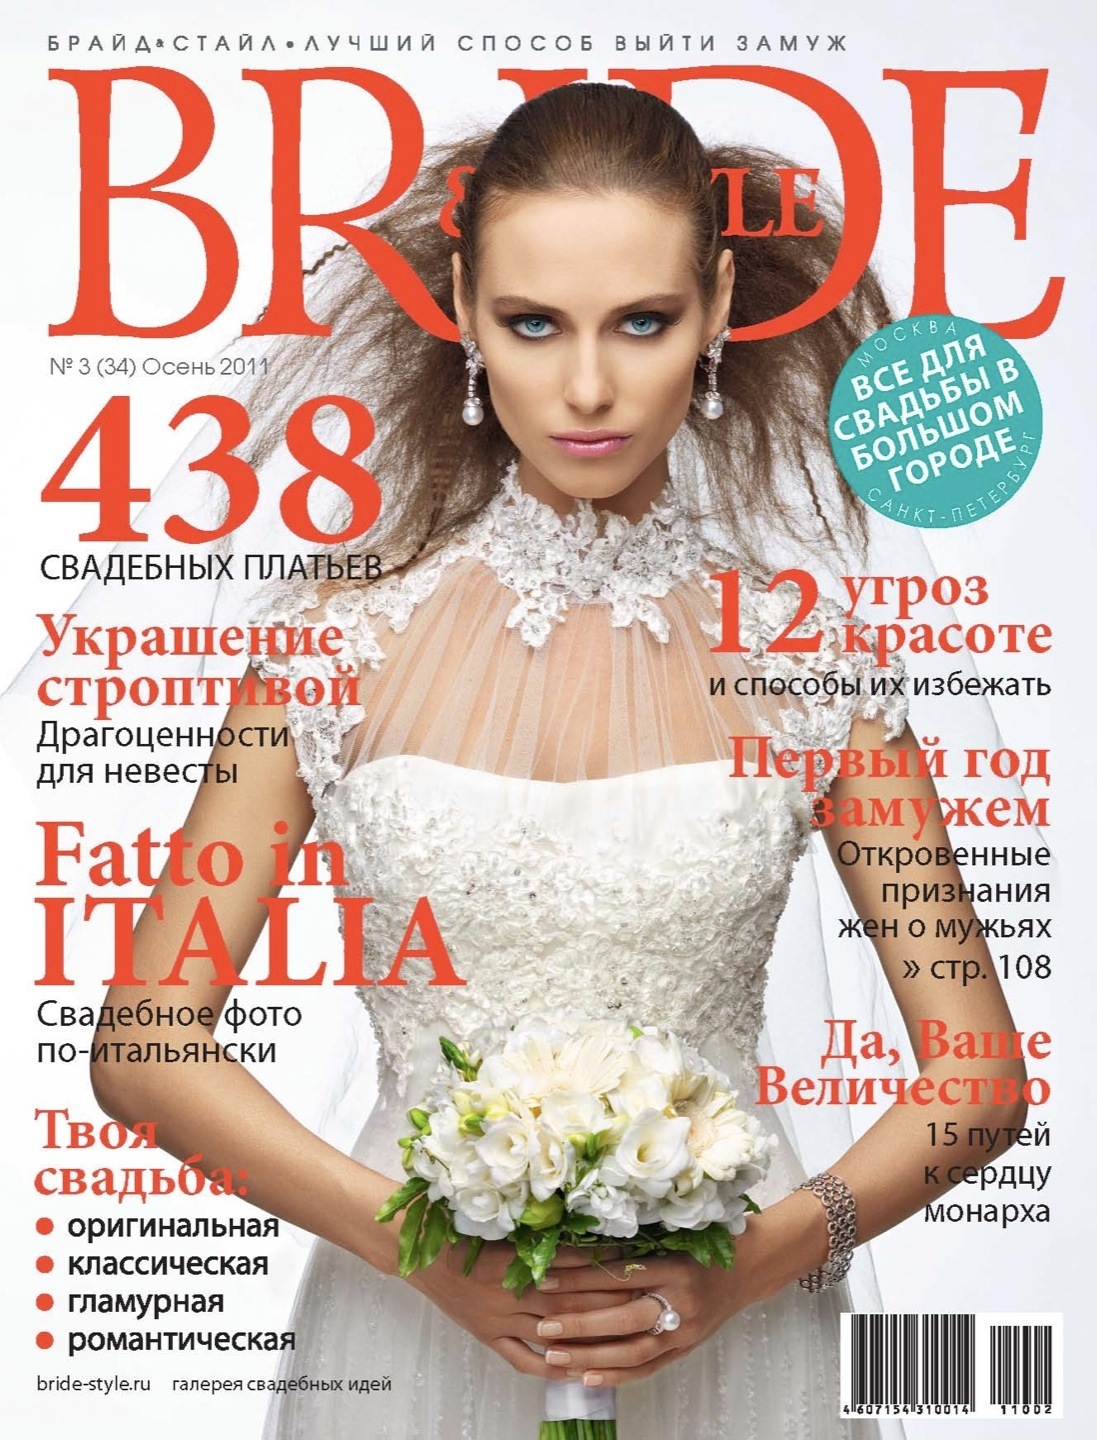 Обложка свадебного журнала